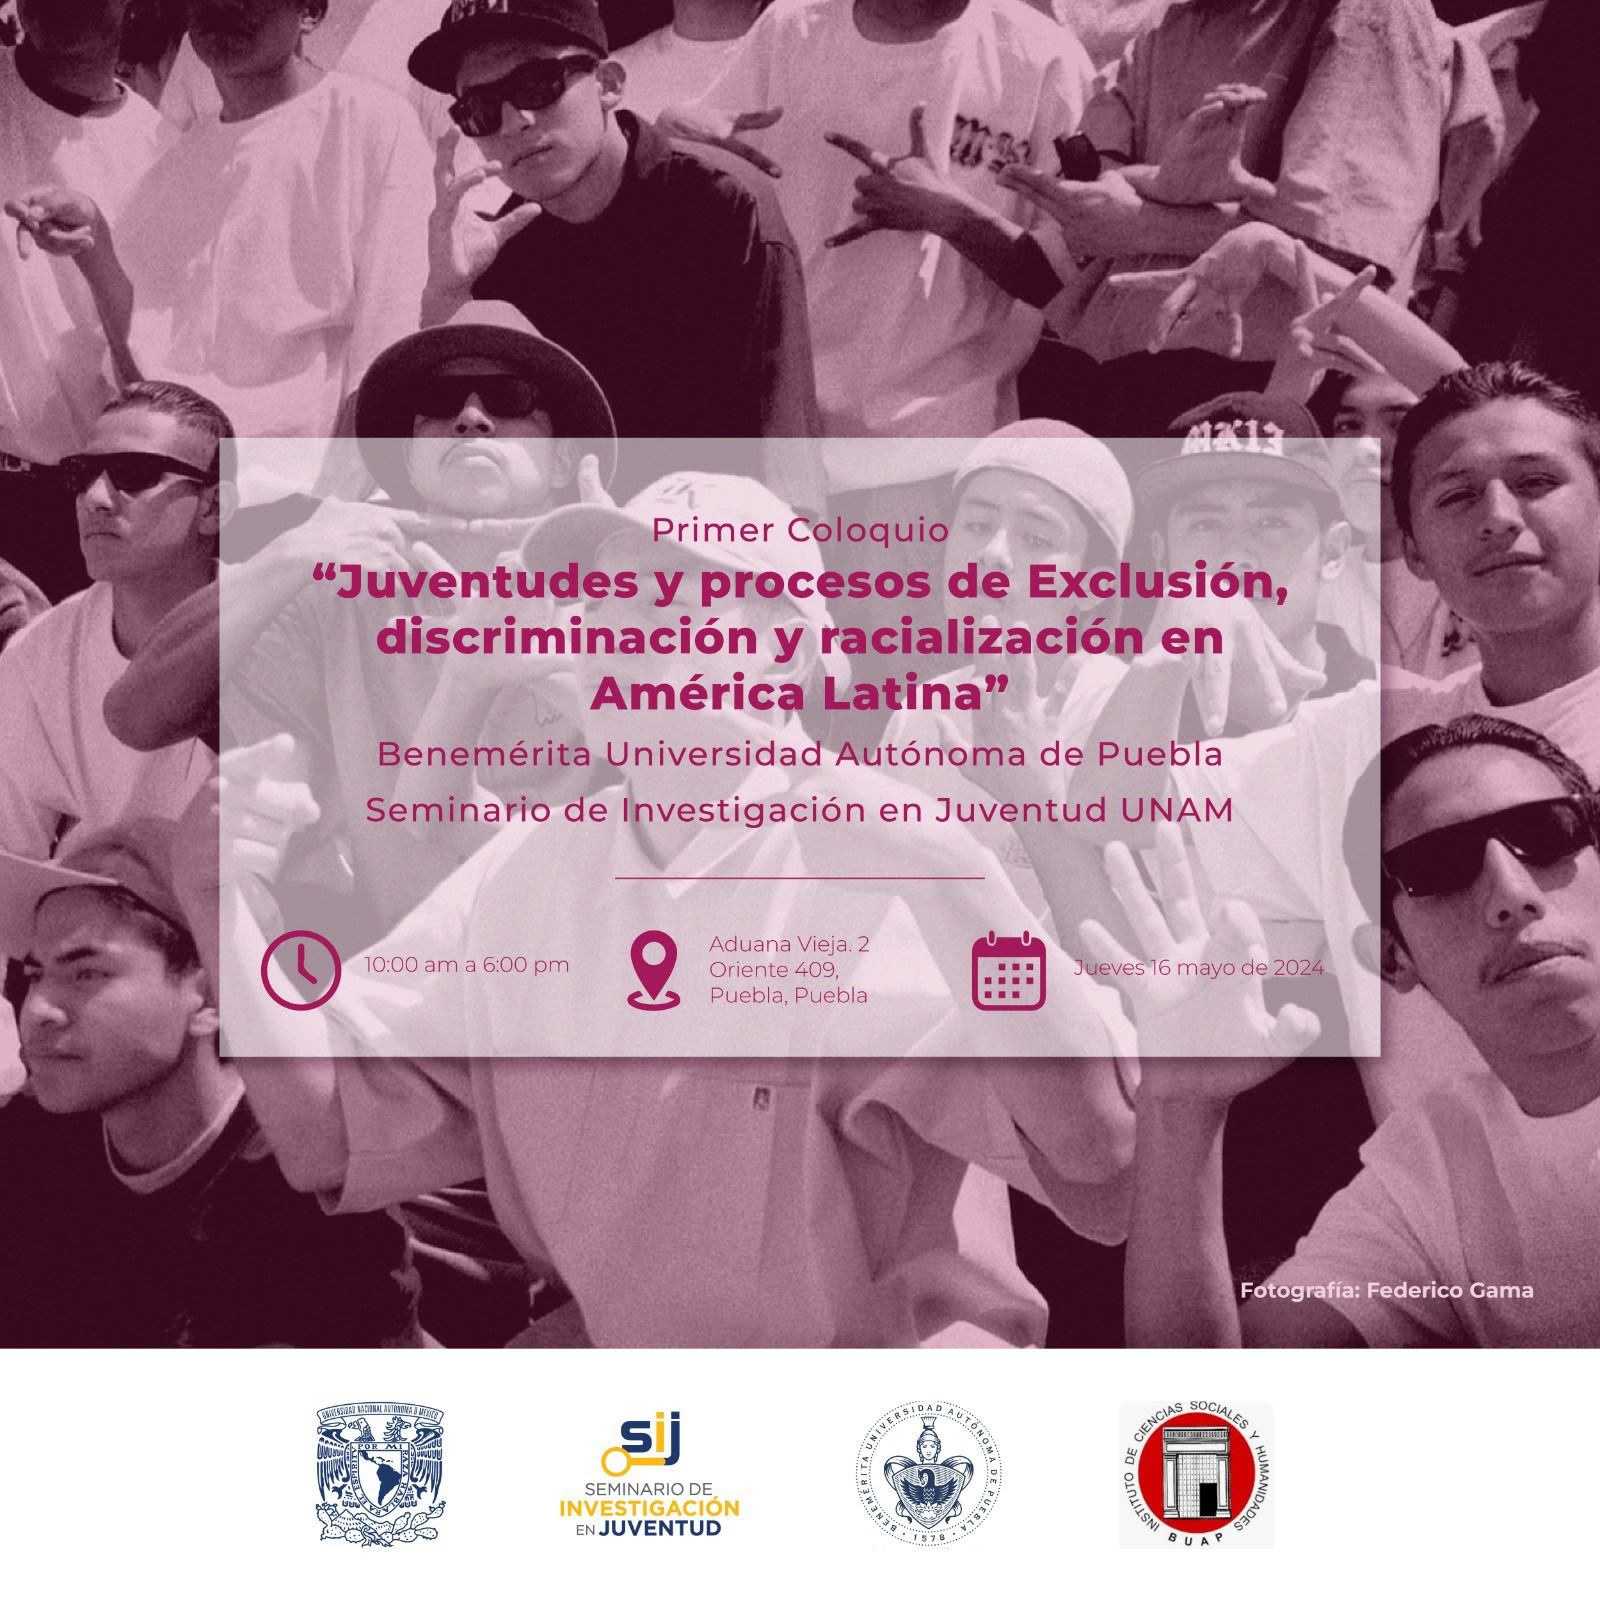 Primer Coloquio: “Juventudes y procesos de Exclusión, discriminación y racialización en América Latina”